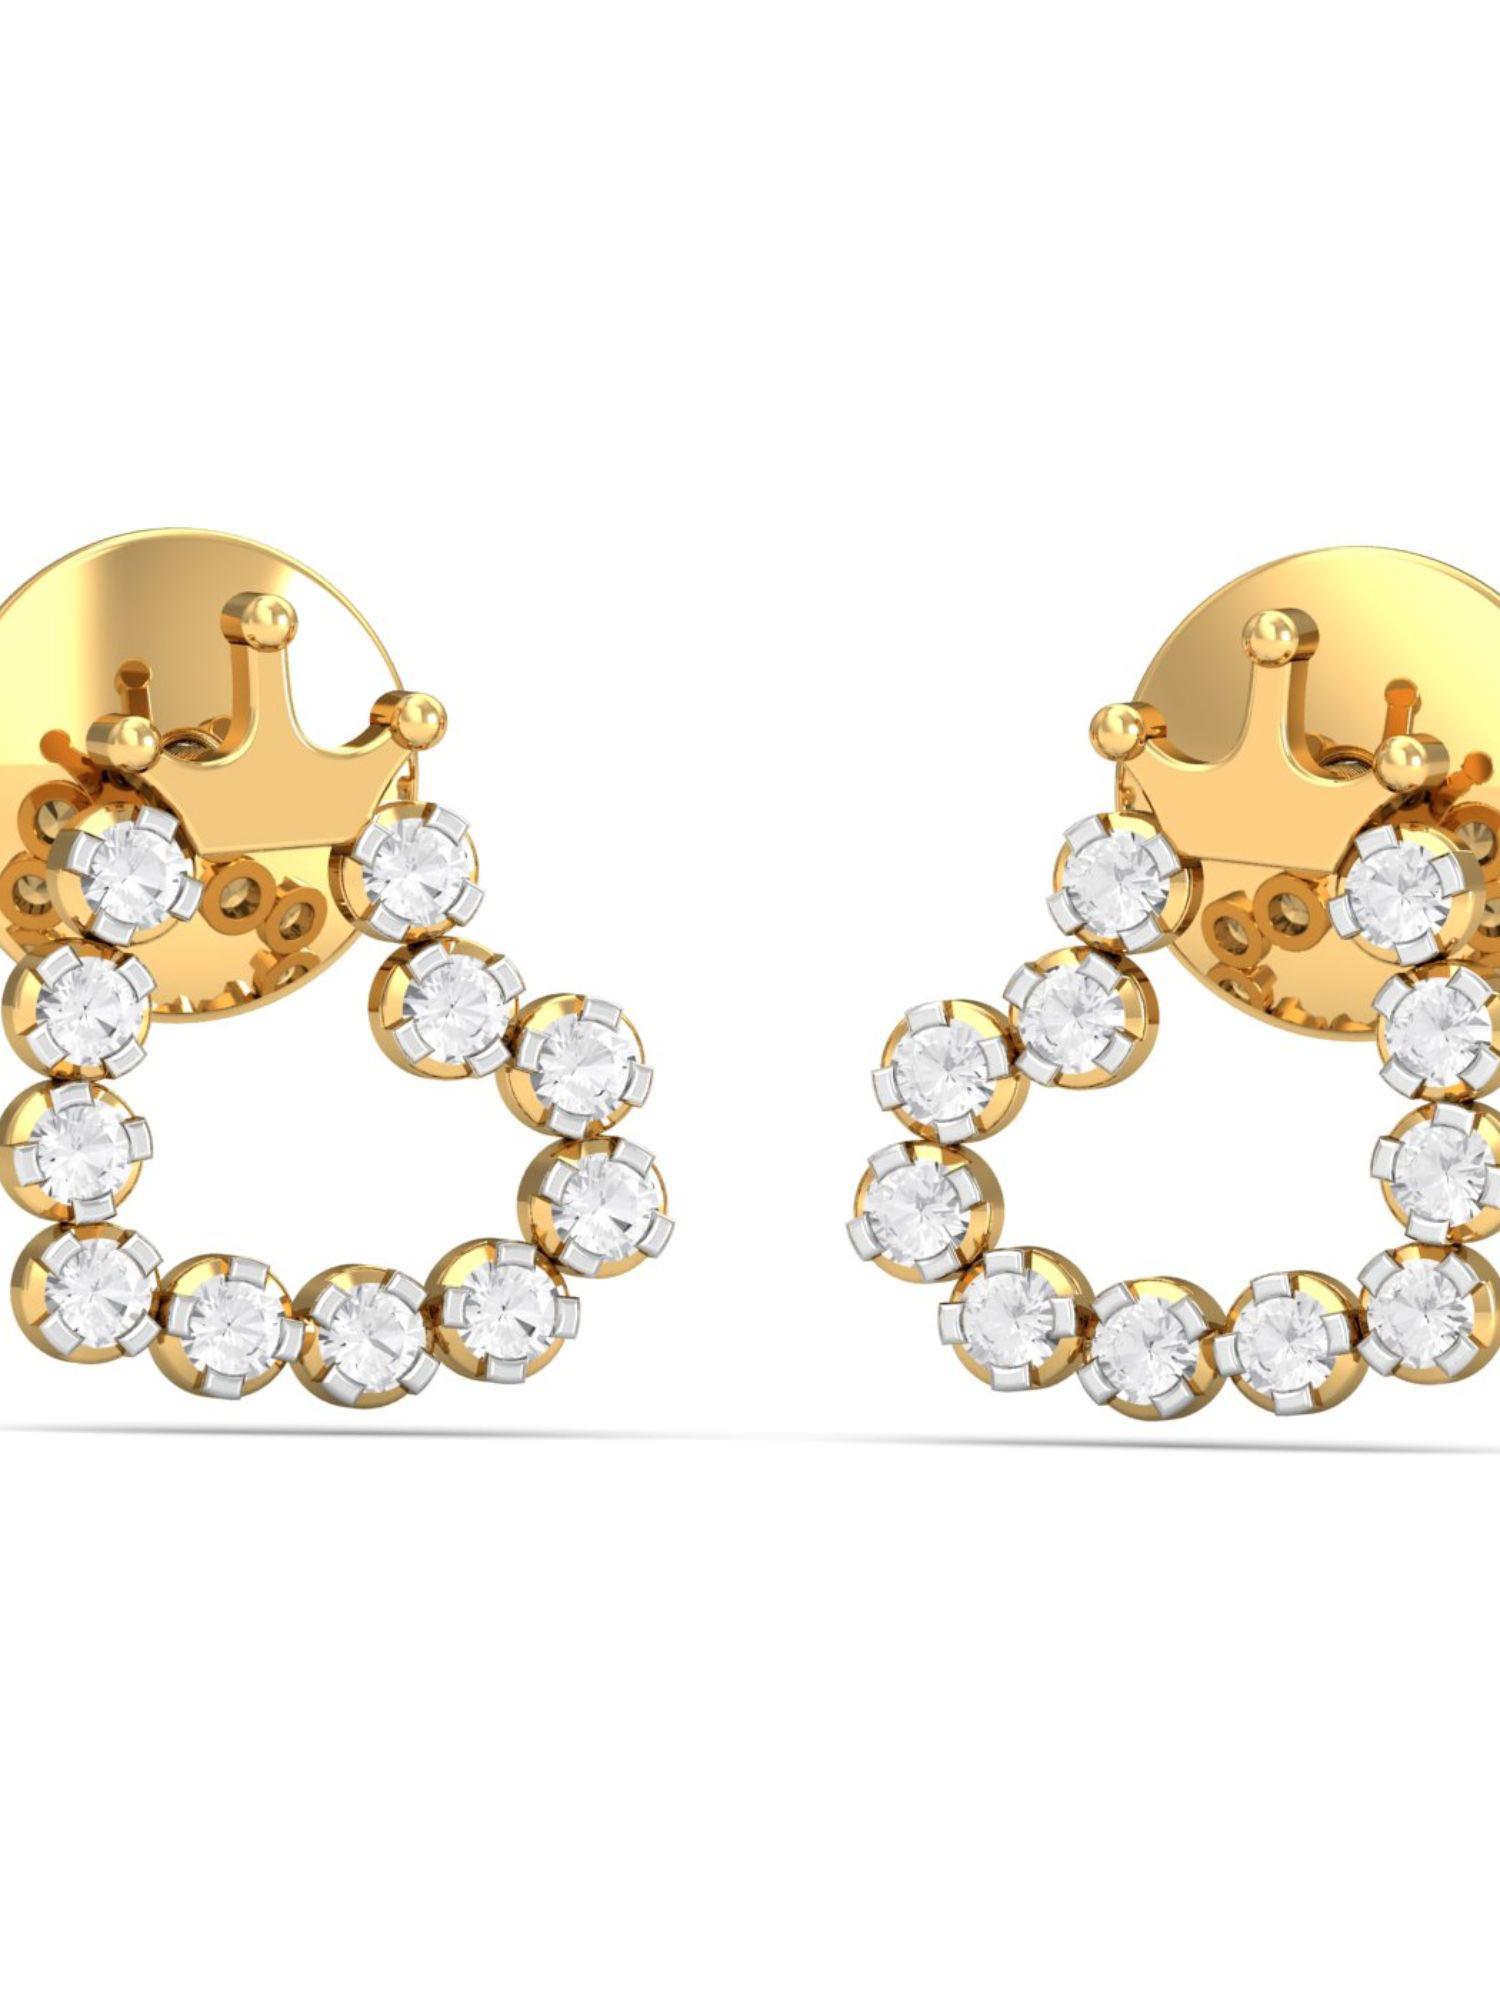 18k cynthea tiara stud earrings for women and girls